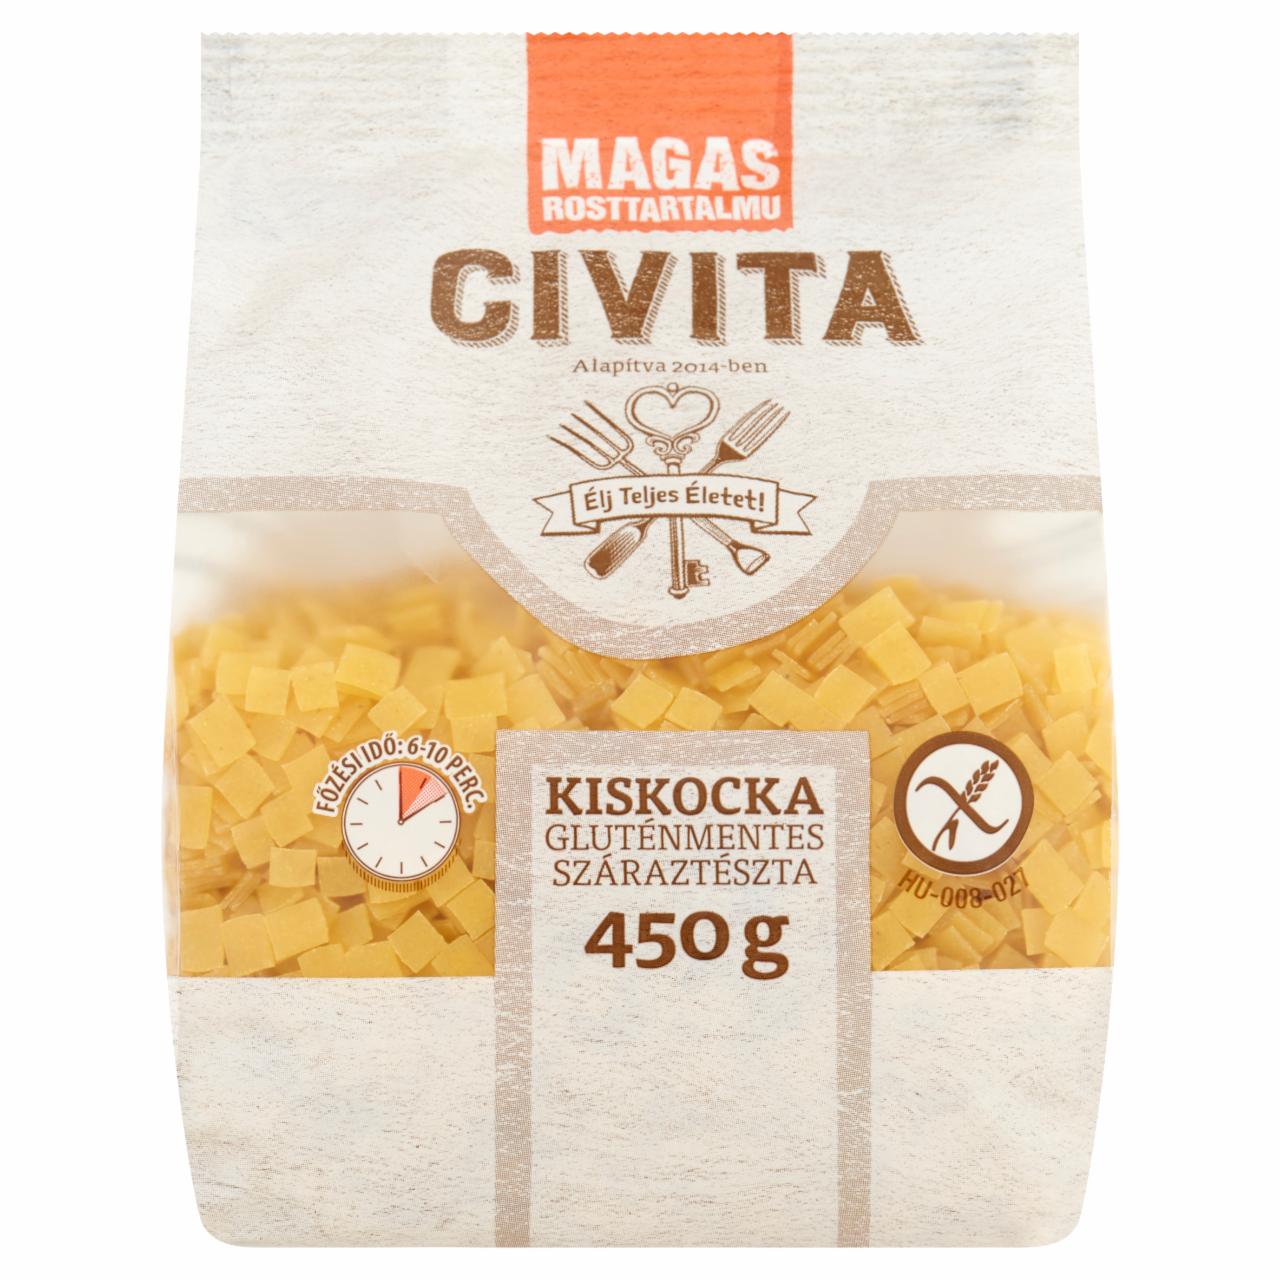 Képek - Civita kiskocka gluténmentes száraztészta 450 g